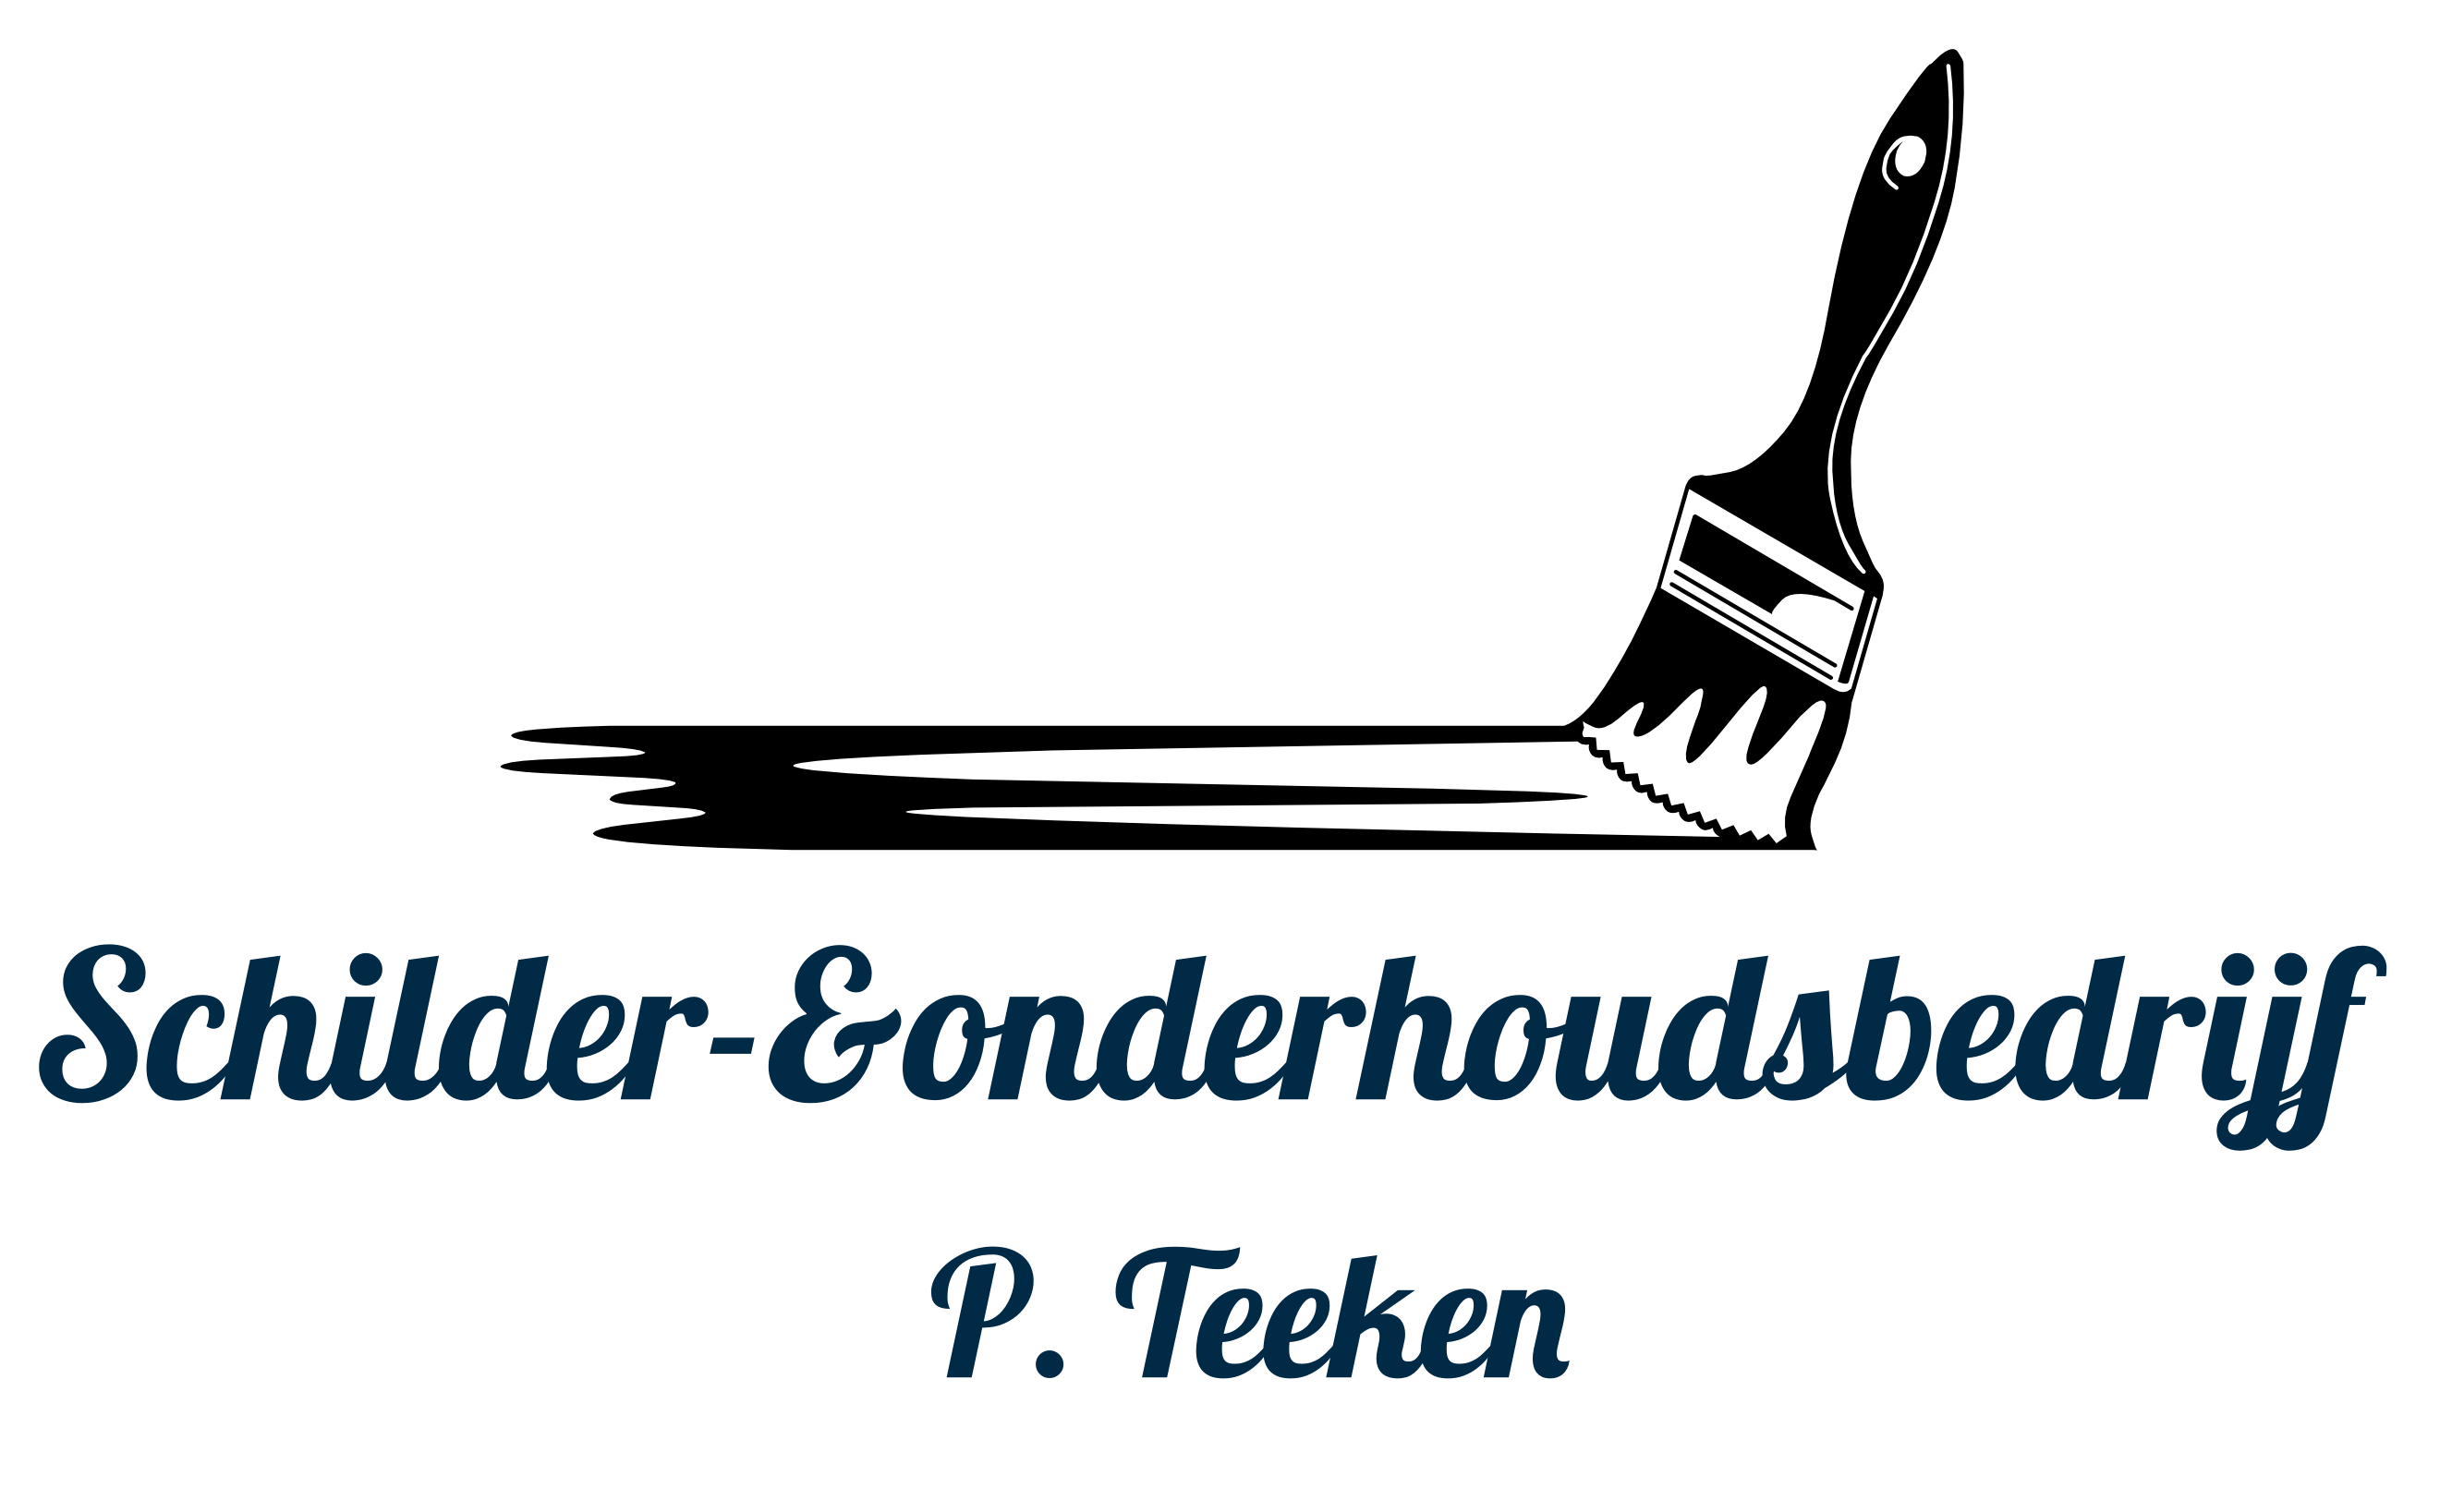 Schilder- & Onderhoudsbedrijf P. Teeken